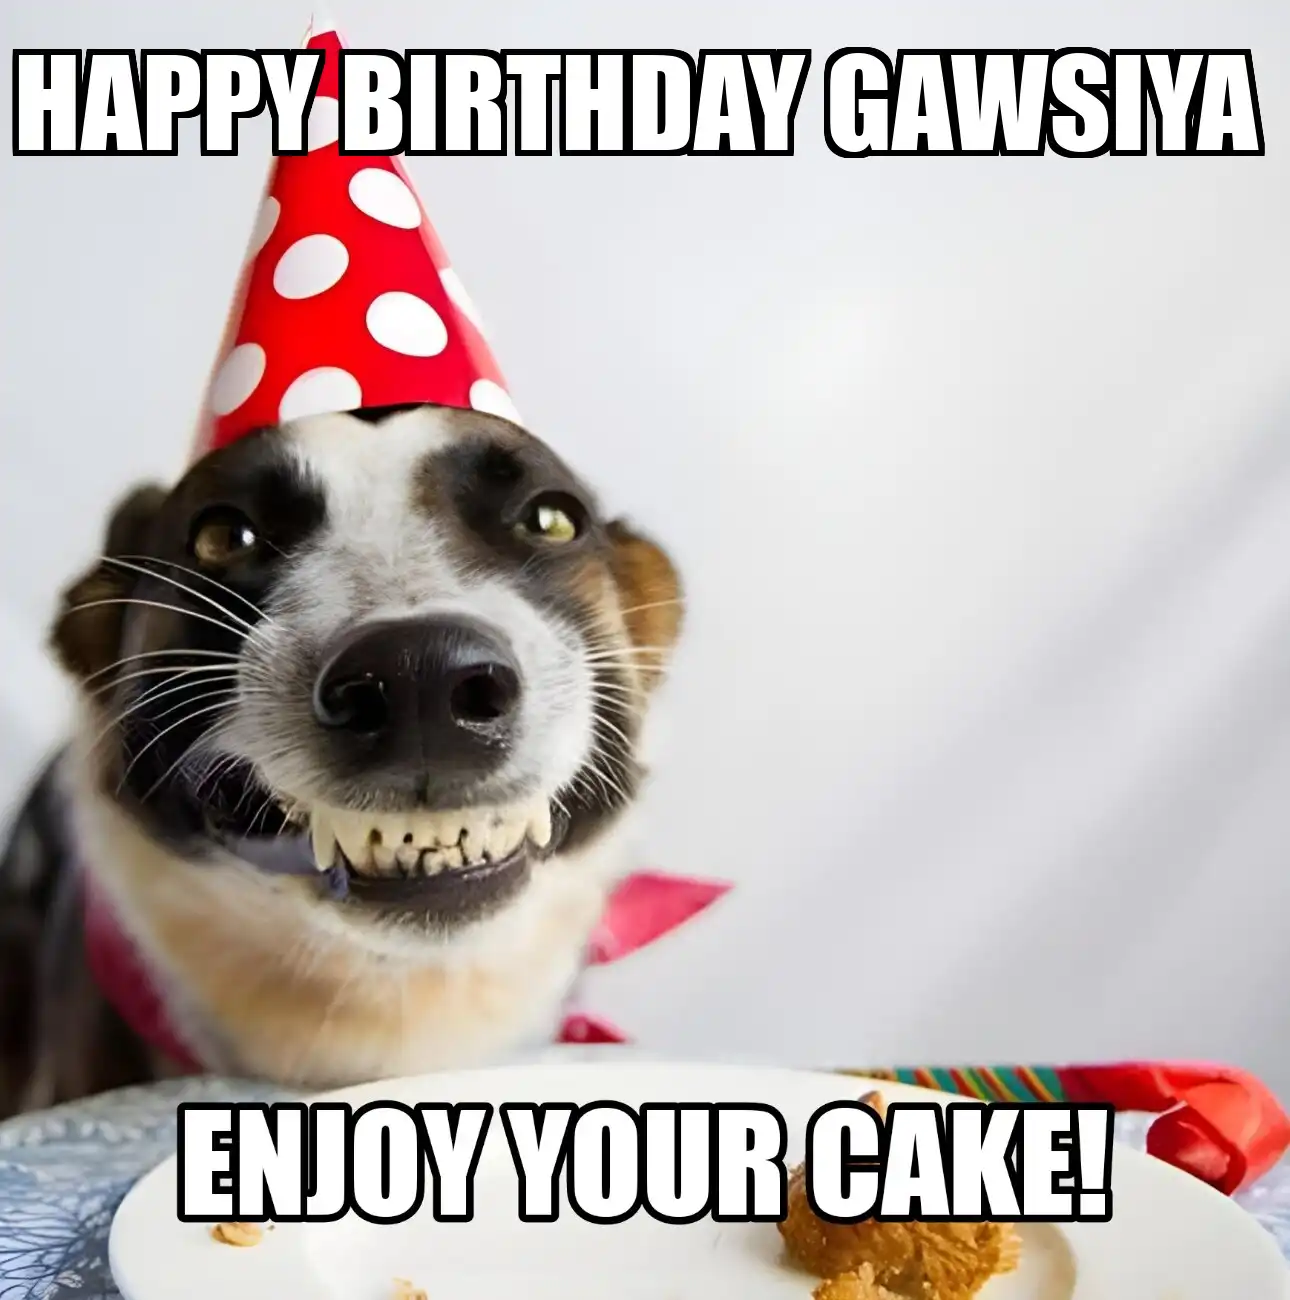 Happy Birthday Gawsiya Enjoy Your Cake Dog Meme